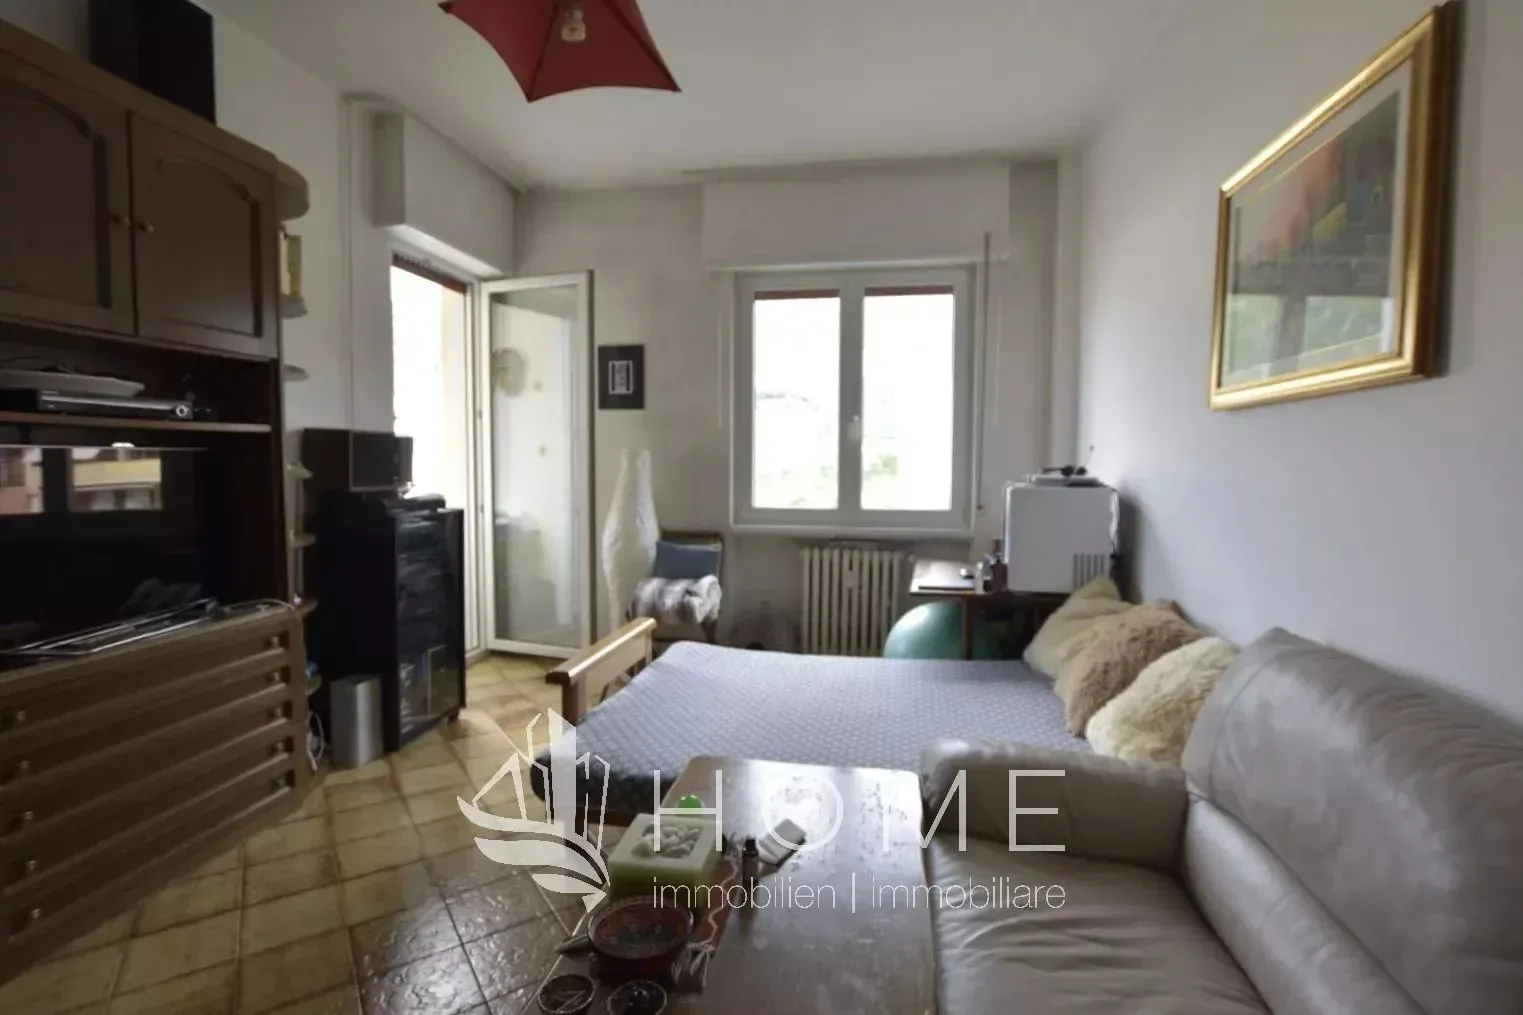 Immagine per Appartamento in vendita a Bolzano via Firenze